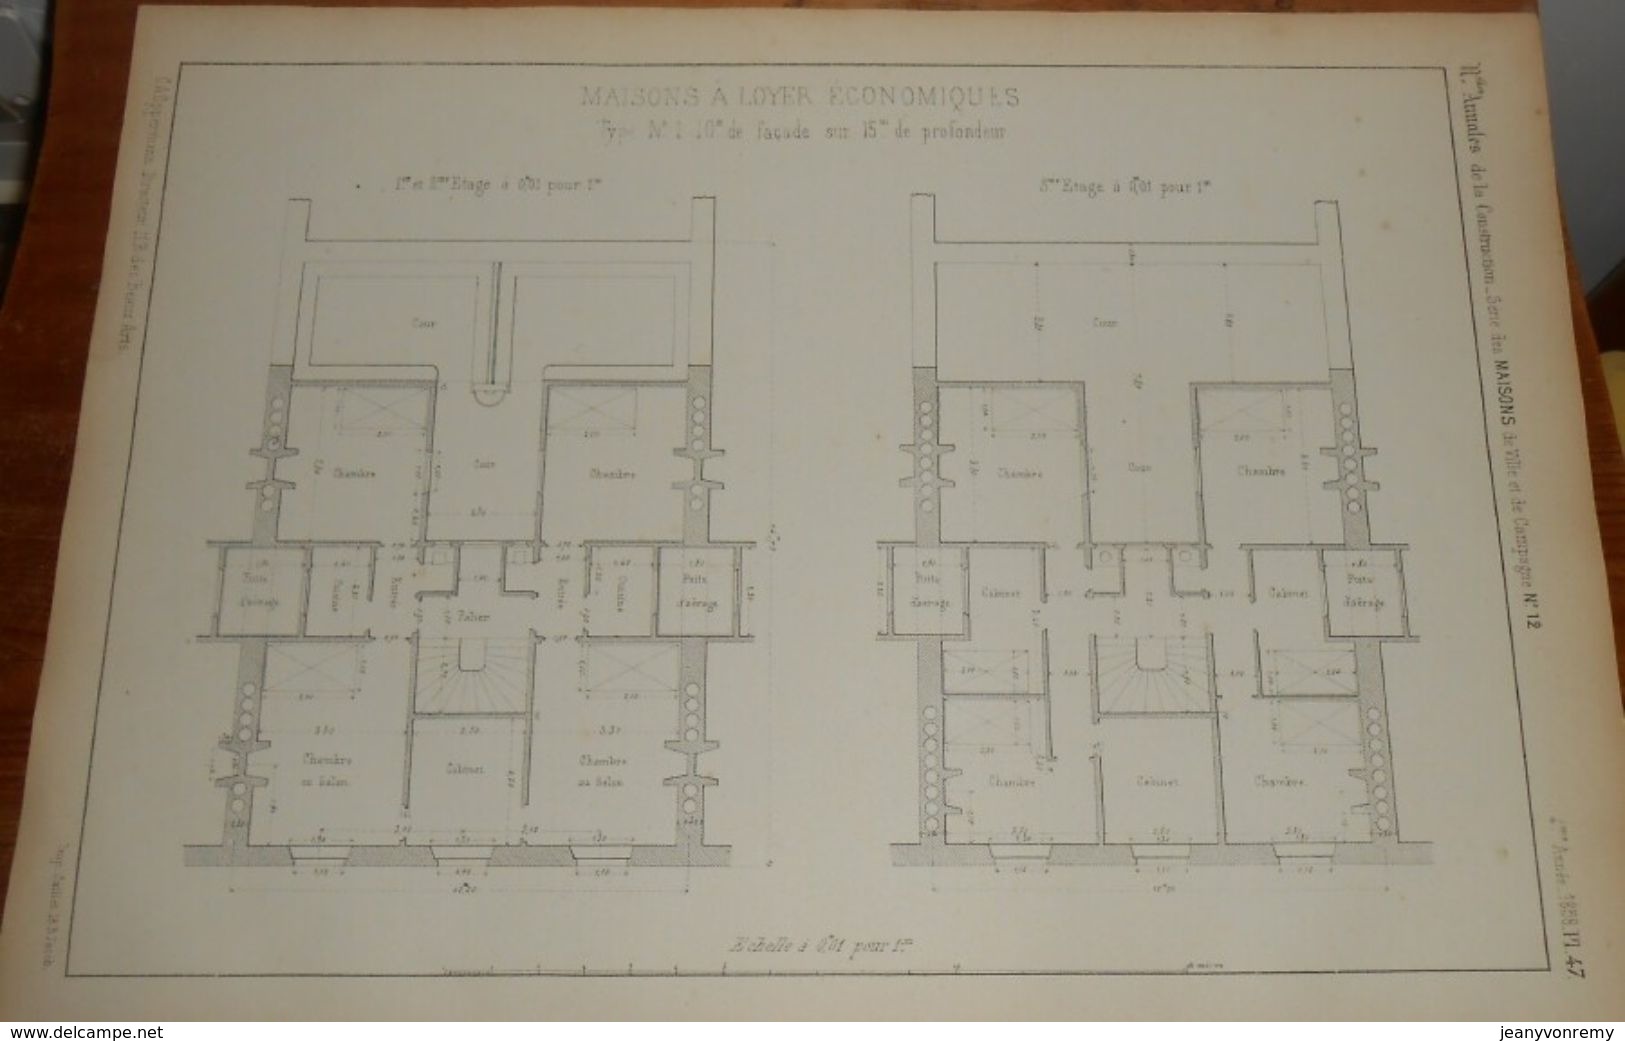 Plan De Maison à Loyer économique. 1858 - Public Works